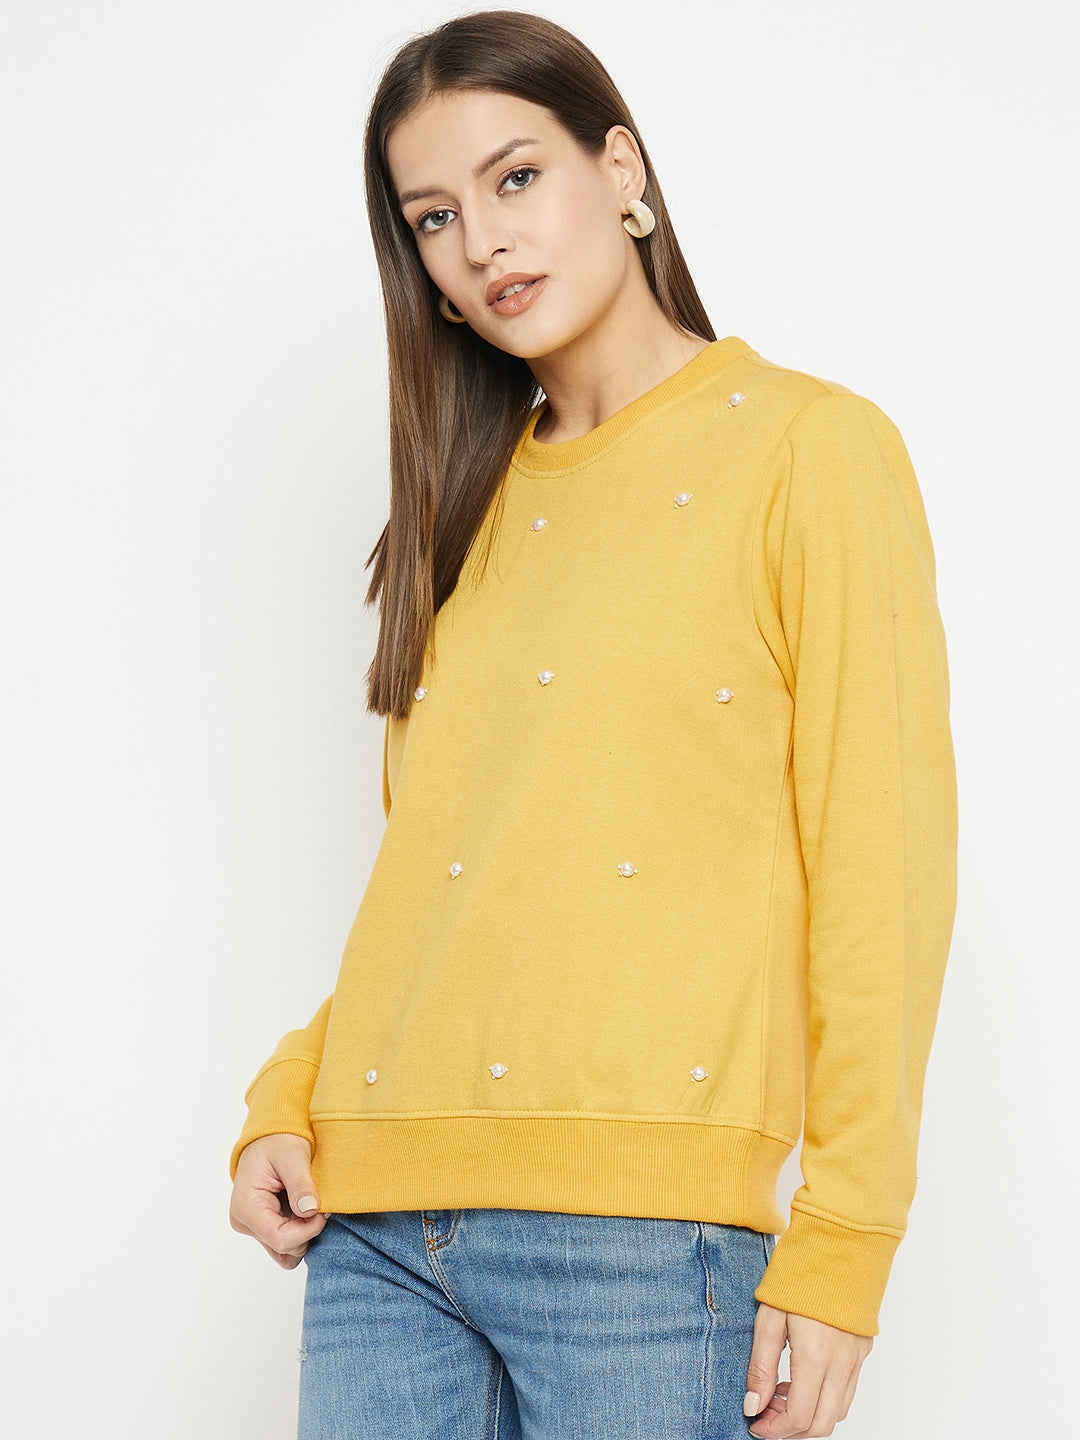 Women's Printed Yellow Sweatshirt